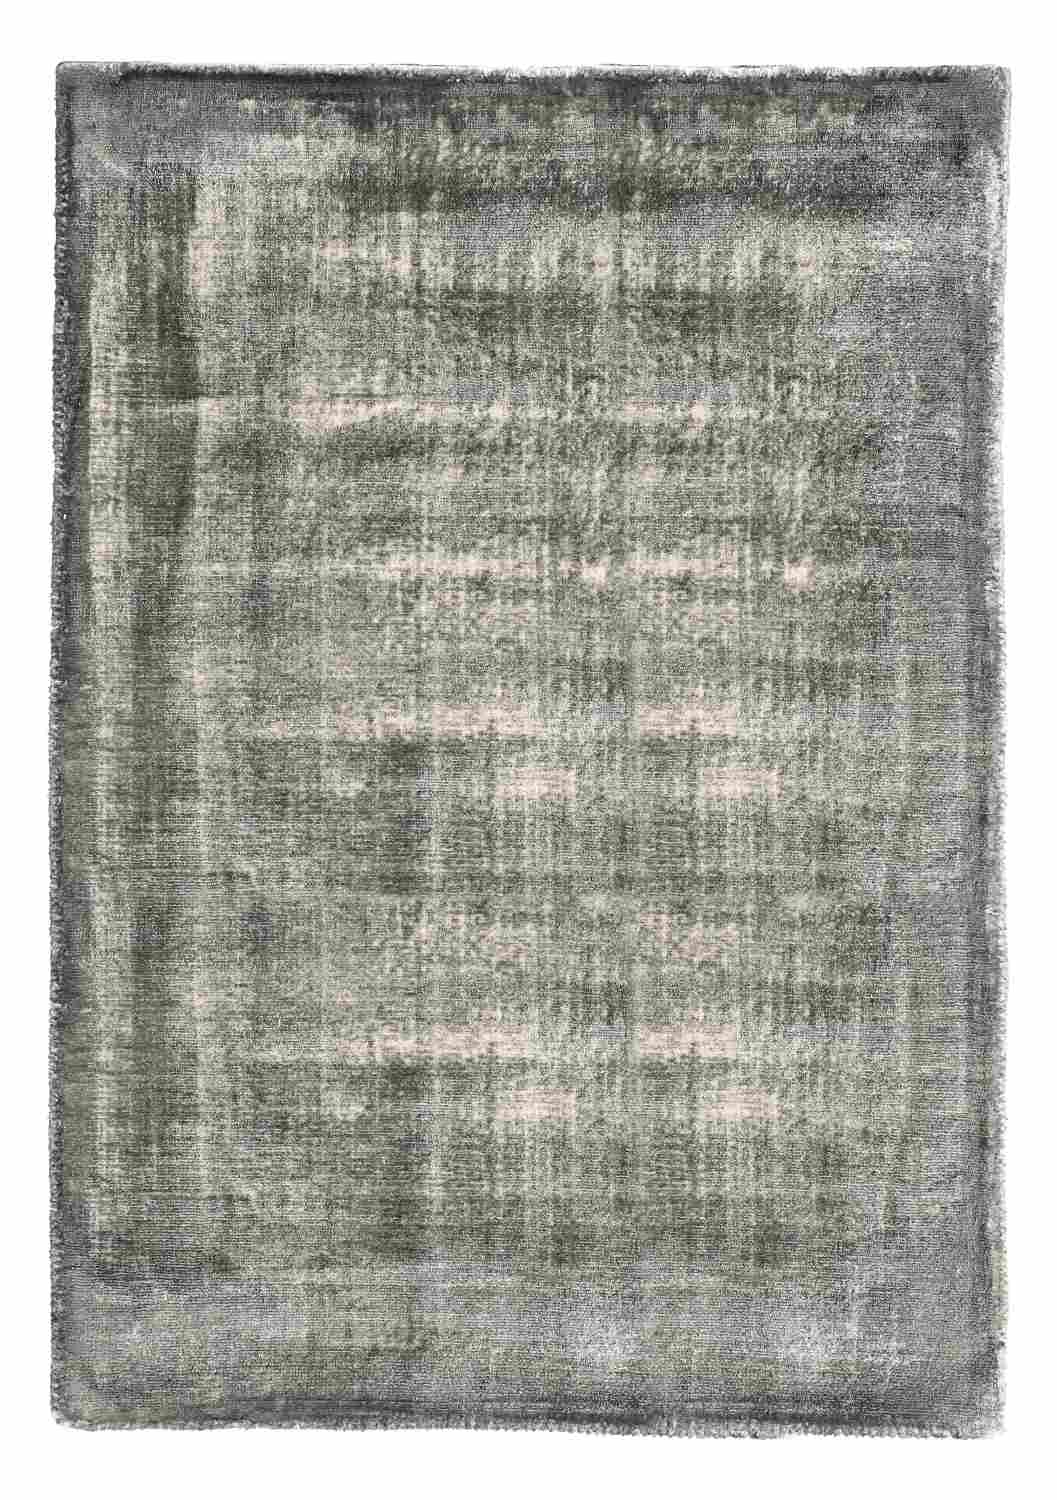 Der Teppich Rashmi überzeugt mit seinem modernen Design. Gefertigt wurde die Vorderseite aus Viskose und die Rückseite aus Baumwolle. Der Teppich besitzt eine grauen Farbton und die Maße von 160x230 cm.